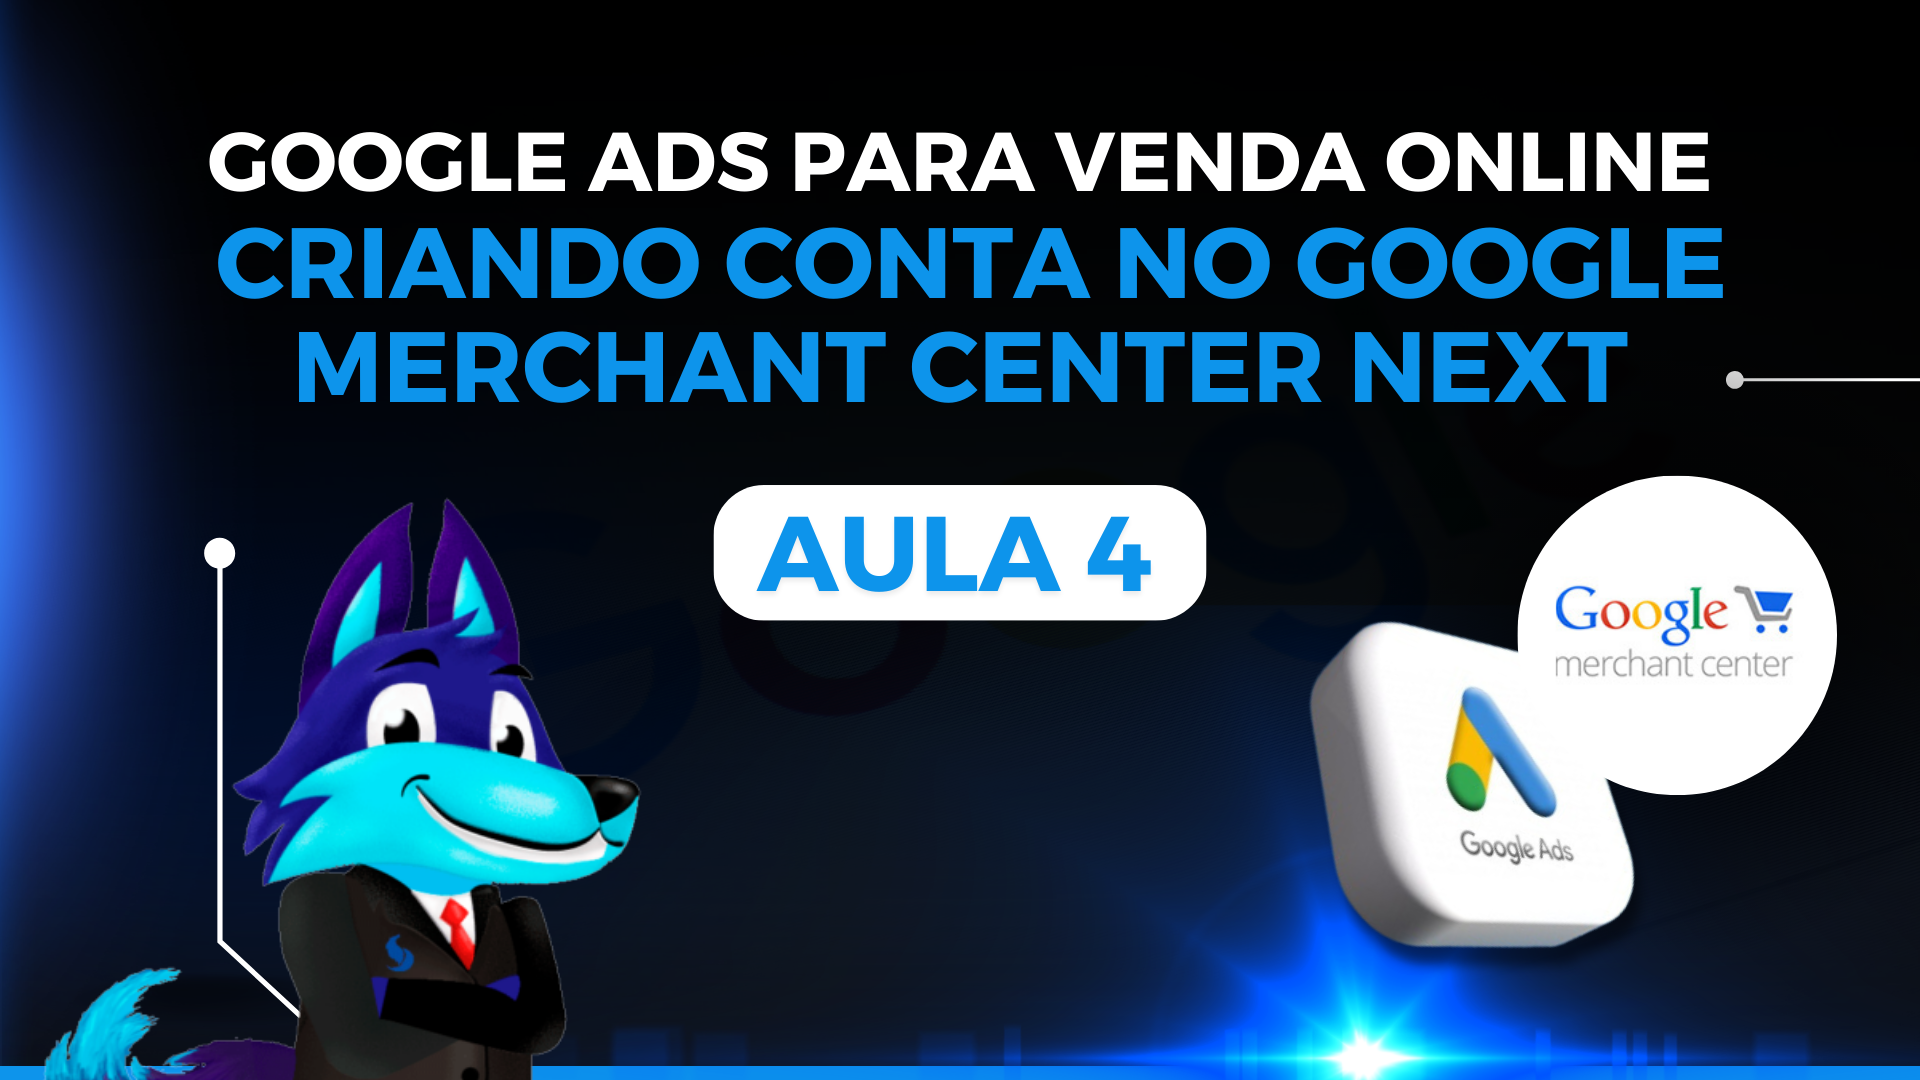 Curso de Google Ads para Venda Online - Aula 04: Configurando o Google Merchant Center